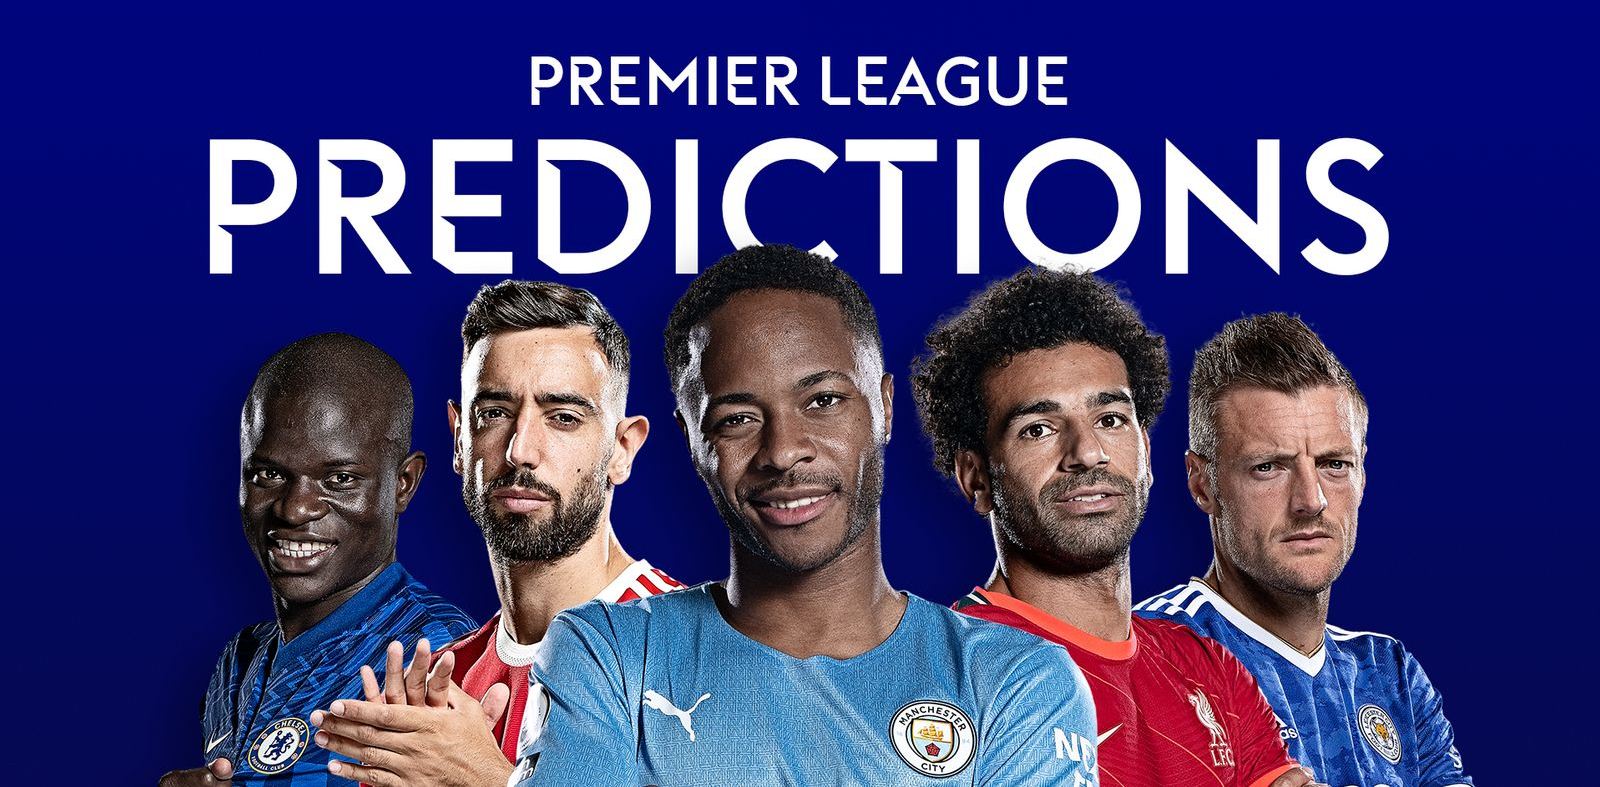 Premier League Prediction